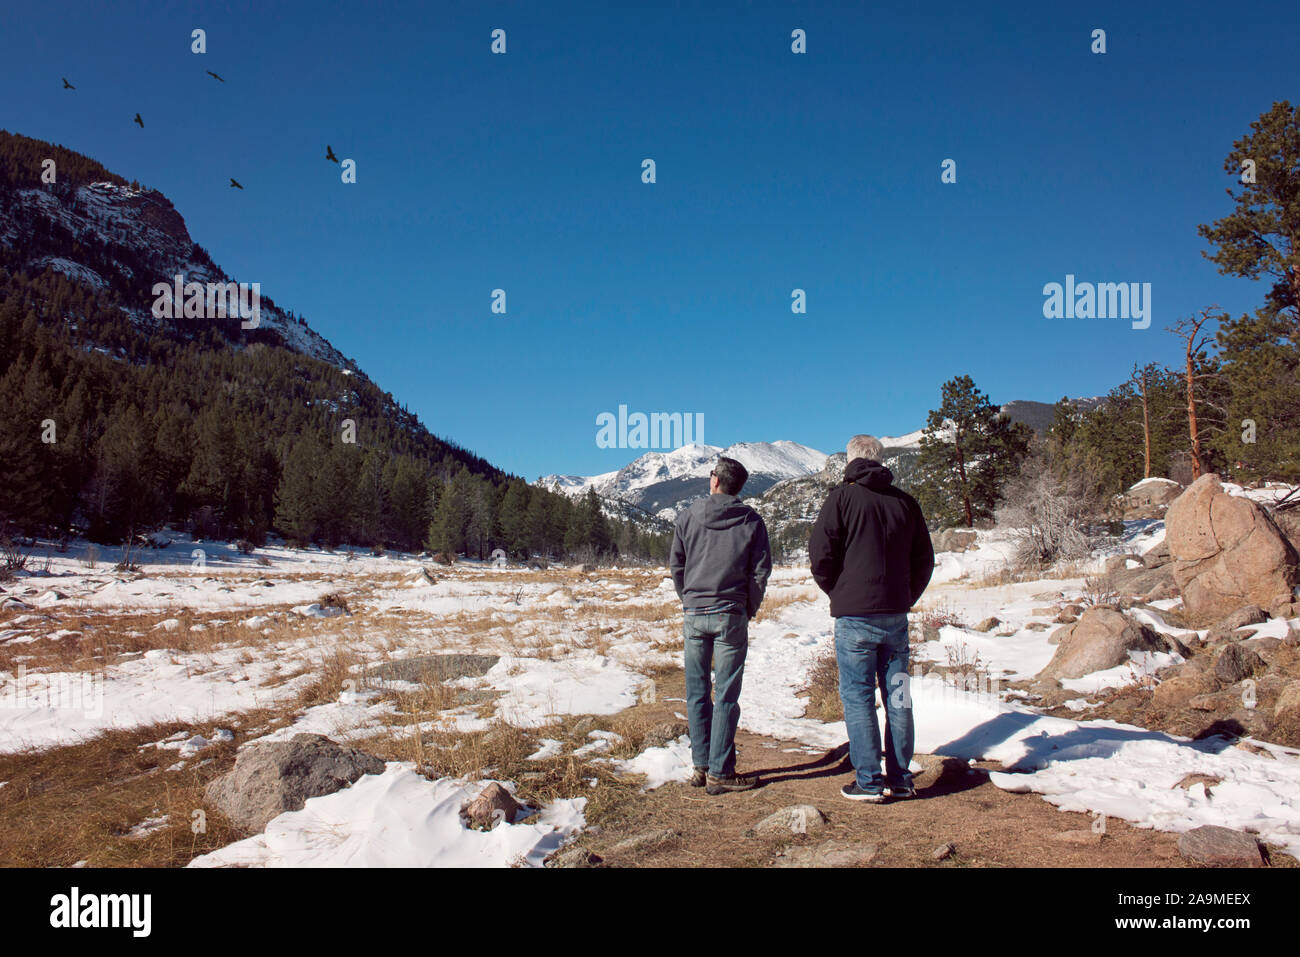 Deux hommes l'observation des oiseaux dans les montagnes Rocheuses sur une journée ensoleillée Banque D'Images